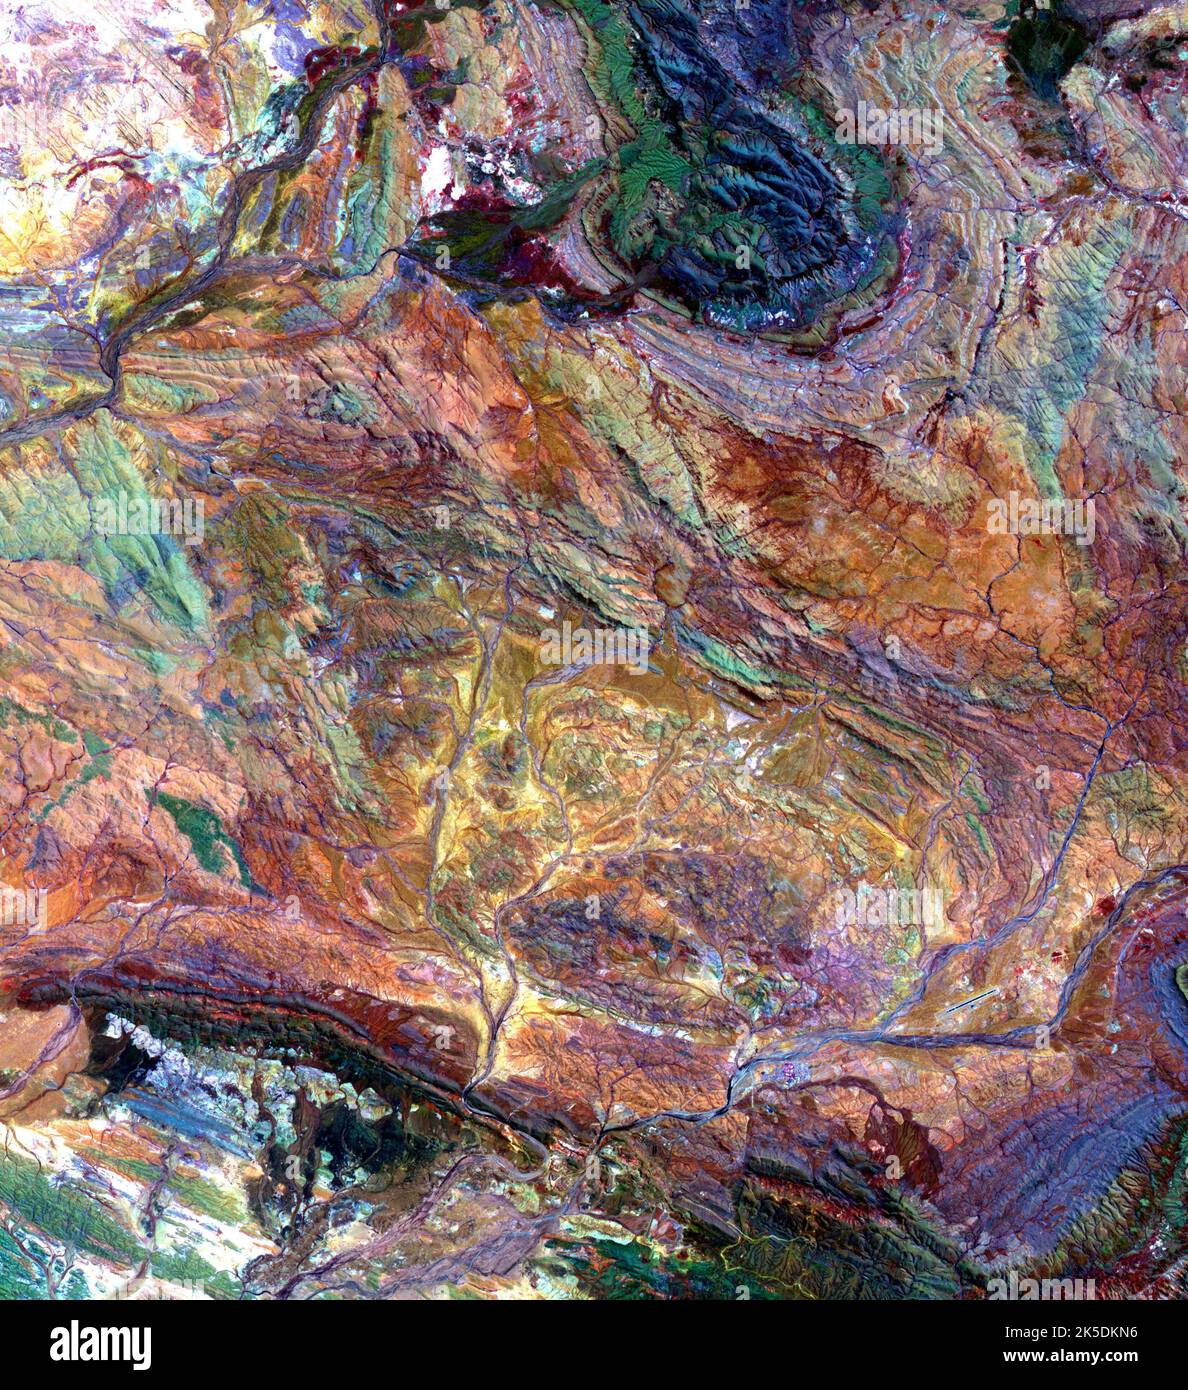 Die Pilbara im Nordwesten Australiens deckt einige der ältesten Gesteine der Erde auf, die über 3,6 Milliarden Jahre alt sind. Die eisenreichen Felsen bildeten sich vor der Anwesenheit von atmosphärischem Sauerstoff und dem Leben selbst. Auf diesen Gesteinen befinden sich 3,45 Milliarden Jahre alte fossile Stromatolithe, Kolonien mikrobieller Cyanobakterien. Das Bild besteht aus einem Verbund von ASTERBÄNDERN 4-2-1, die in RGB angezeigt werden. Das Bild wurde am 12. Oktober 2004 aufgenommen, erstreckt sich über eine Fläche von 49,1 x 55,2 km und liegt bei 22,8 Grad Süd, 117,6 Grad Ost. Stockfoto